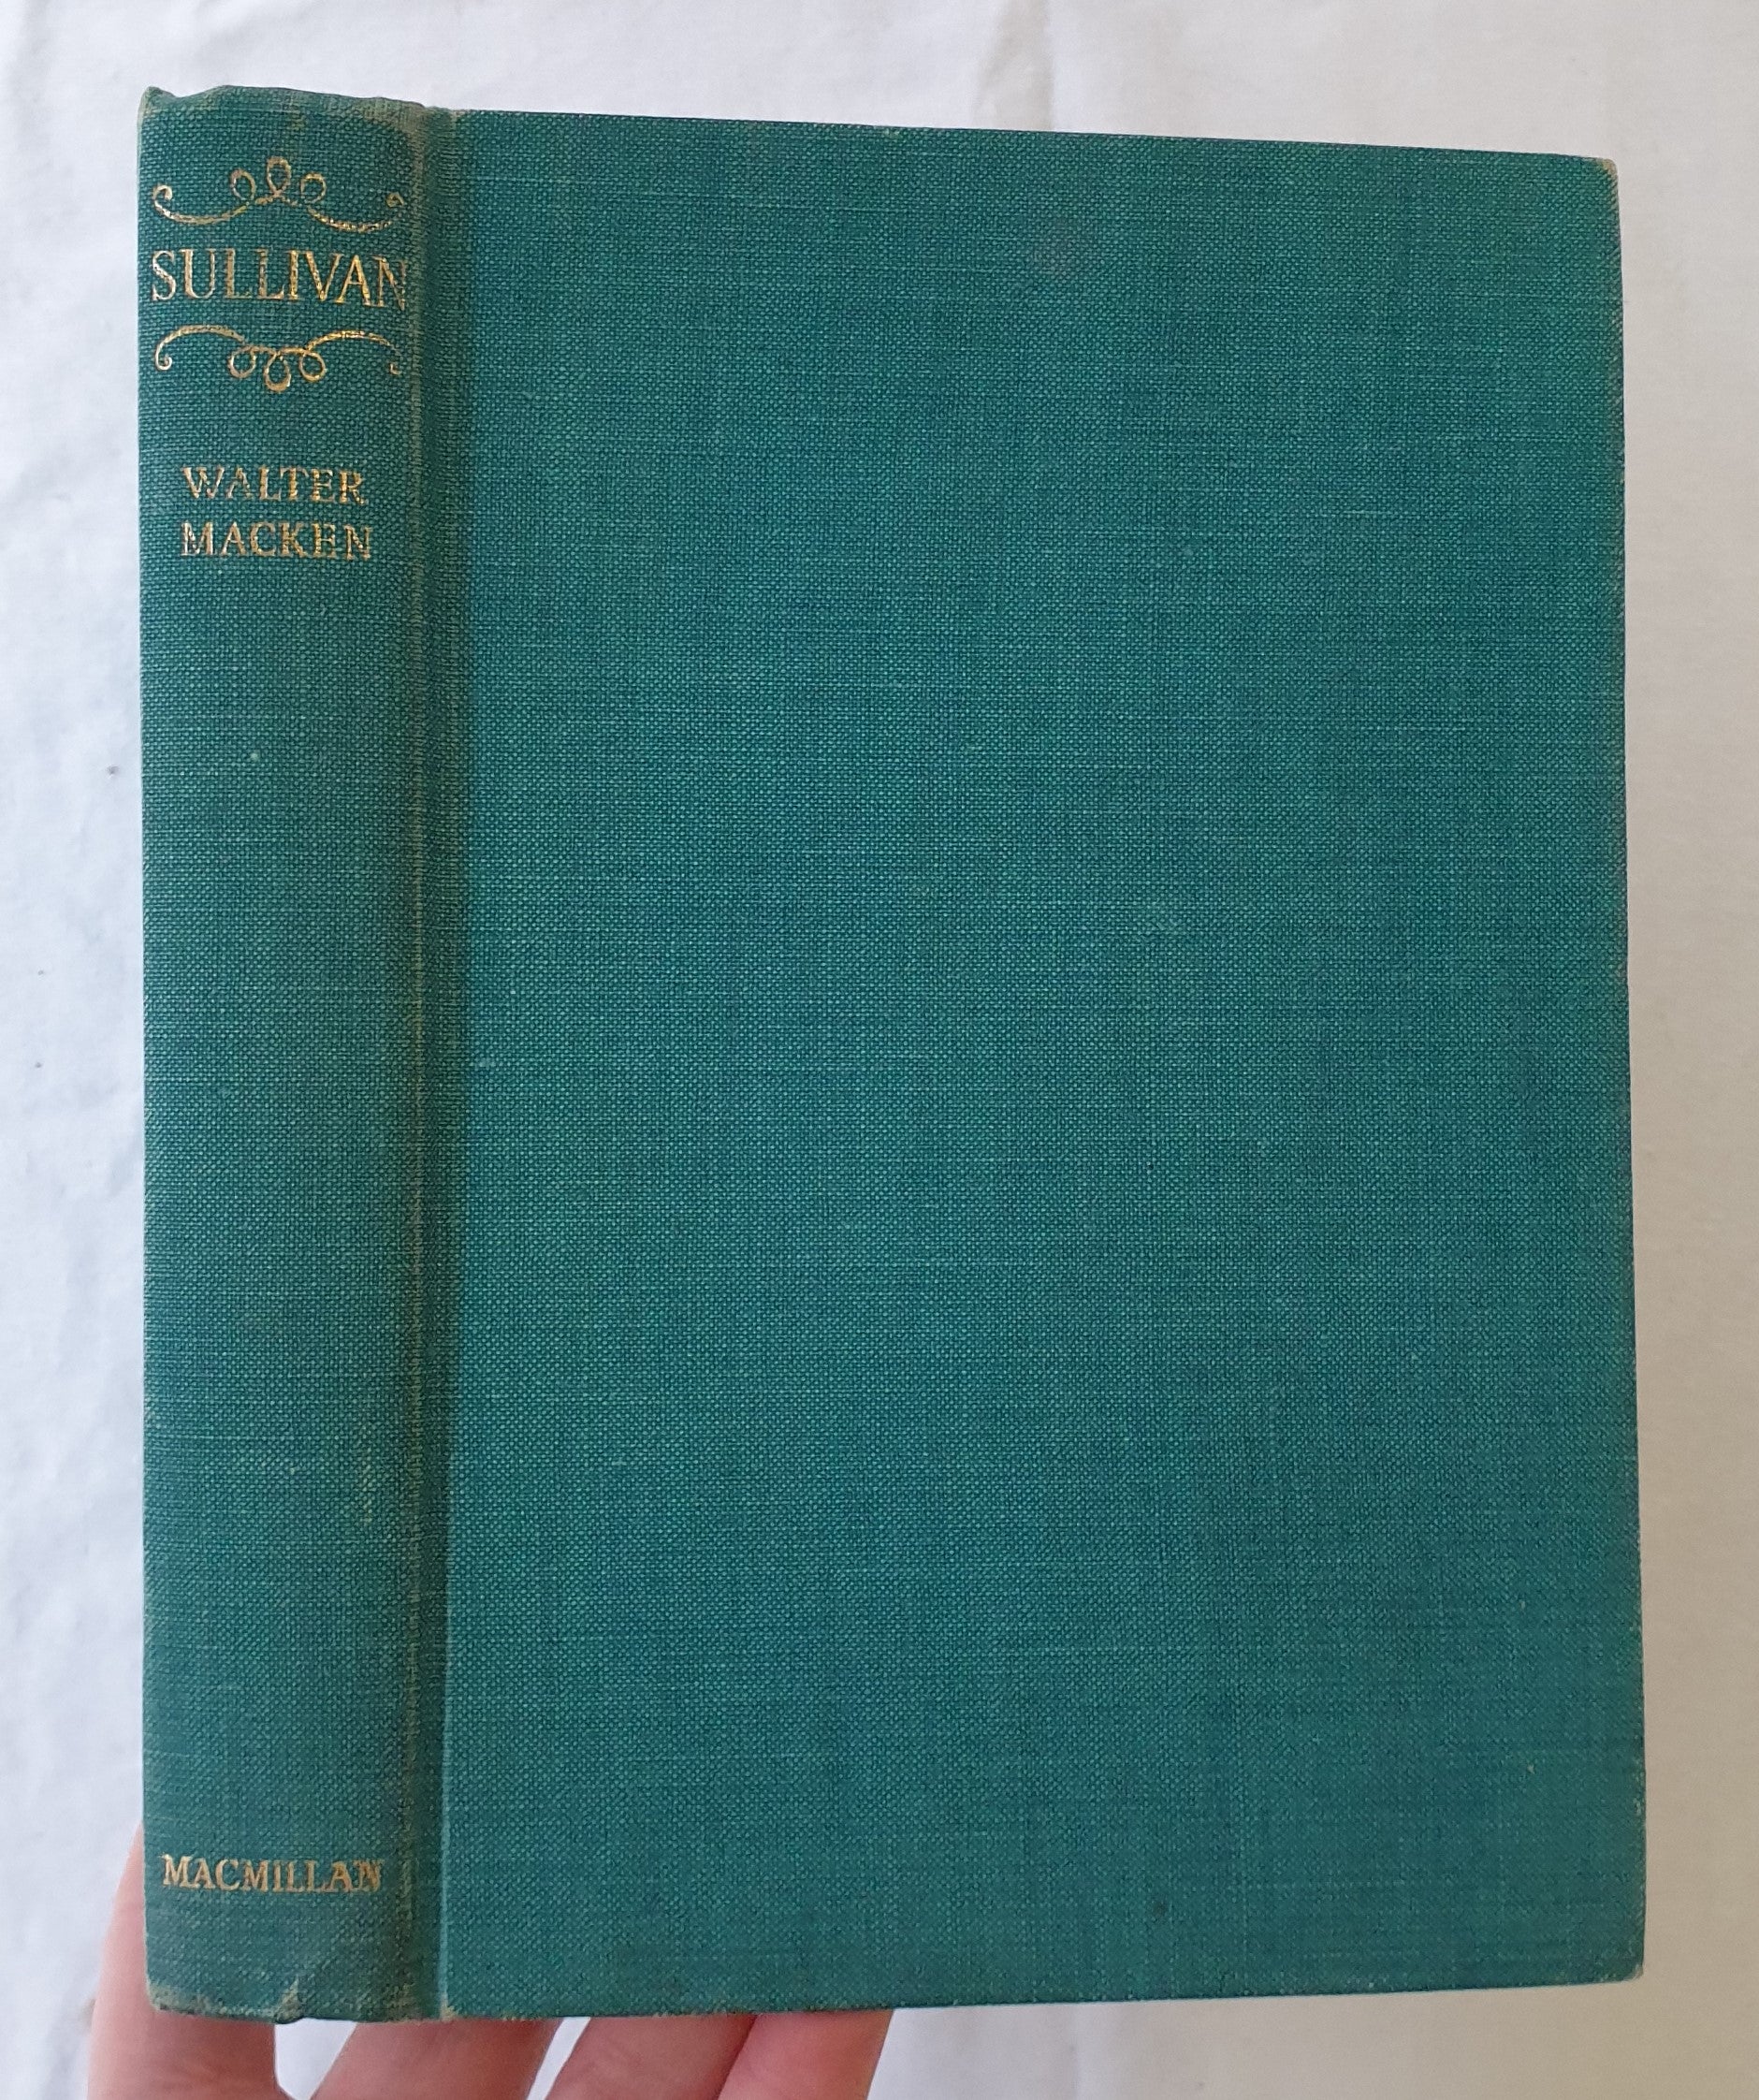 Sullivan by Walter Macken